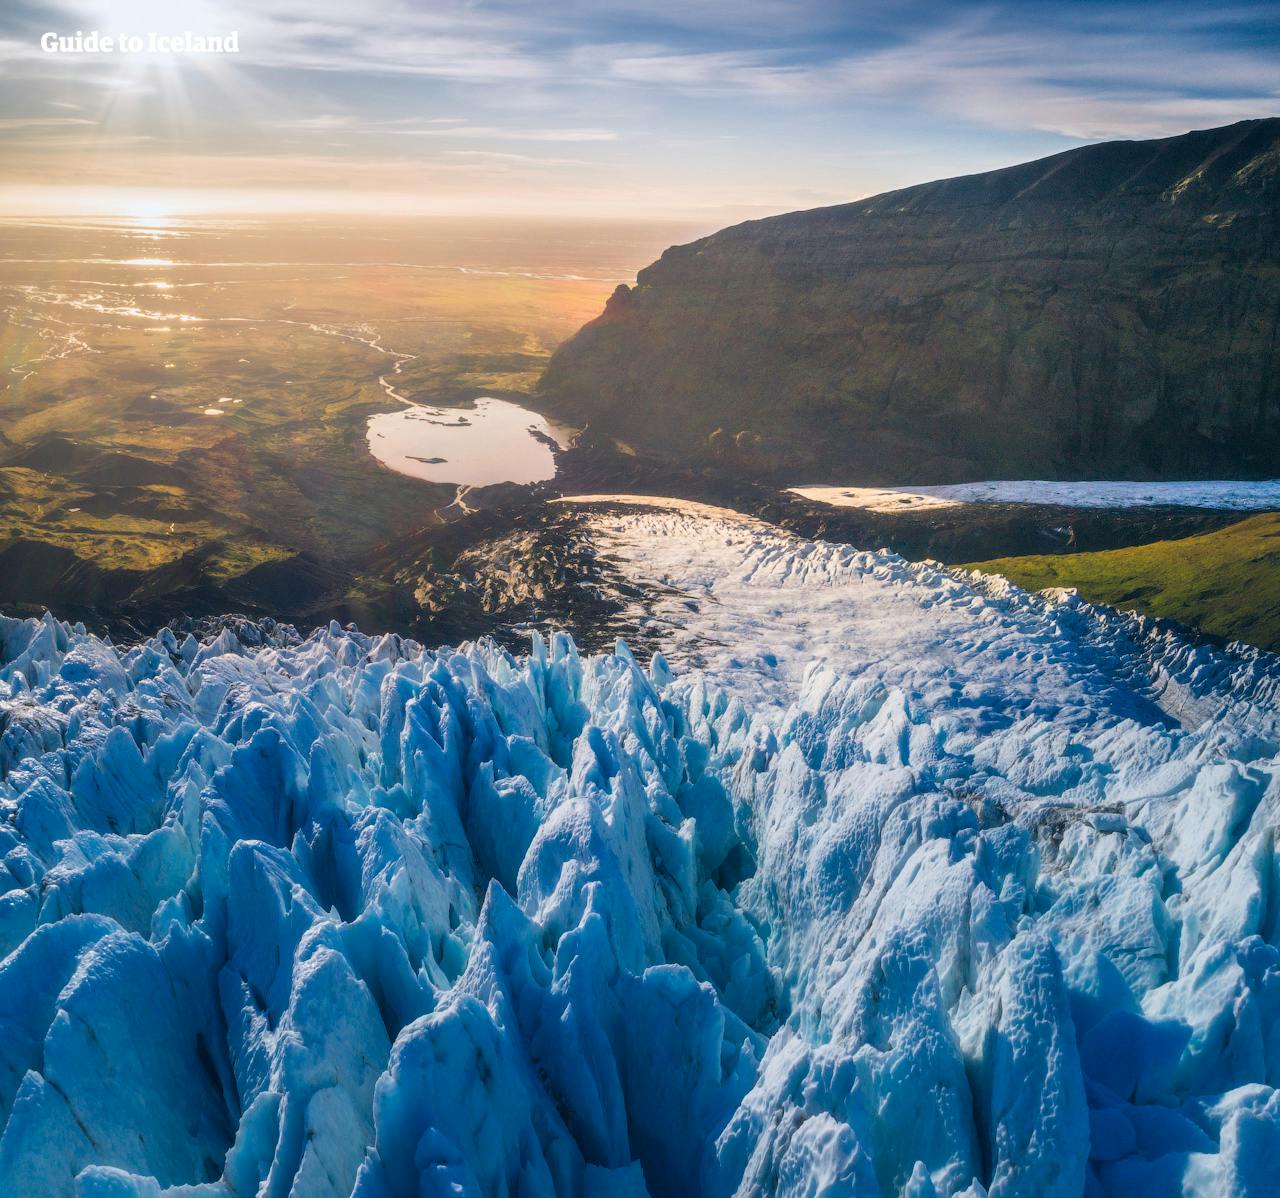 여름 렌트카 여행 패키지로 아이슬란드의 남부해안을 여행하면서 검은모래 해변과 새하얀 빙하, 푸른 초원을 만날 수 있습니다.